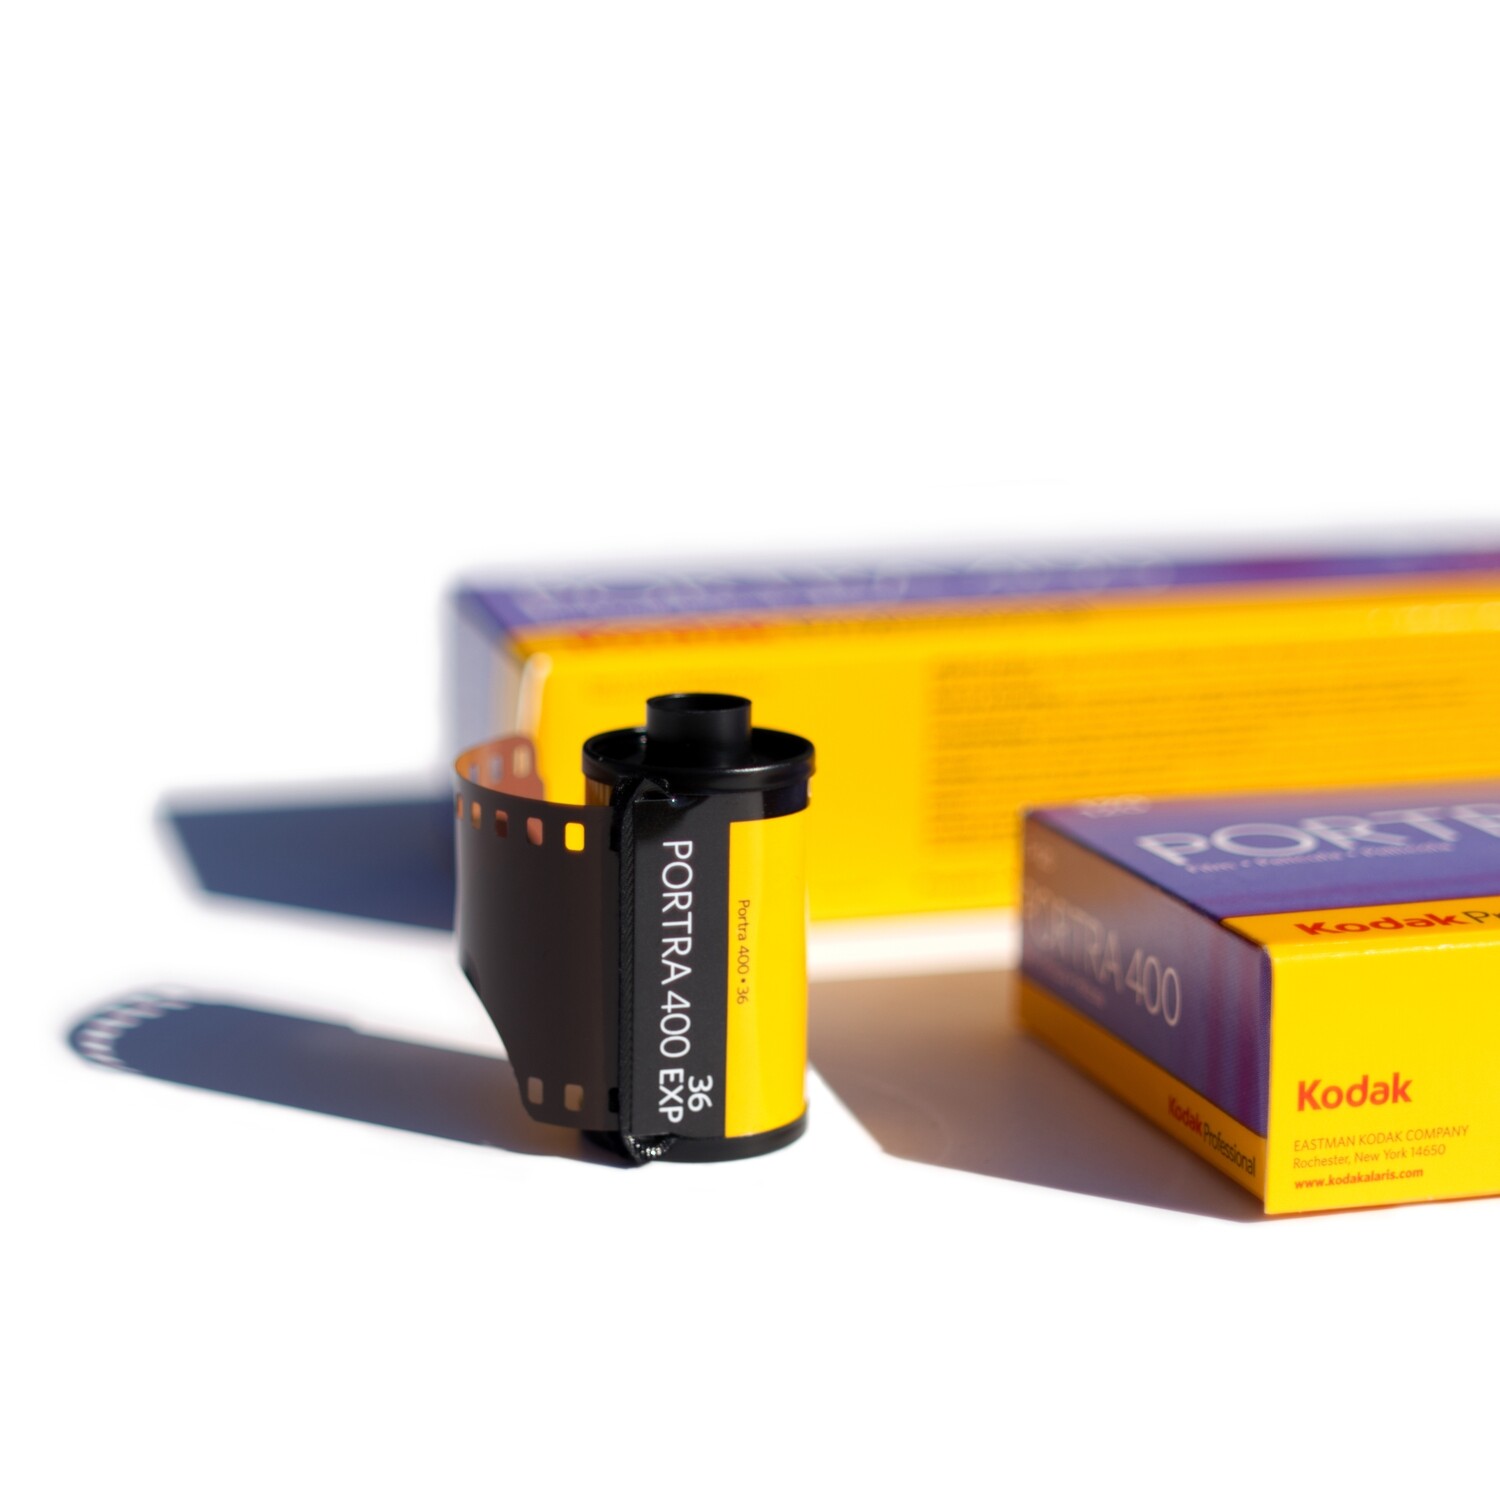 Kodak Professional Portra 400 35mm - Single Roll